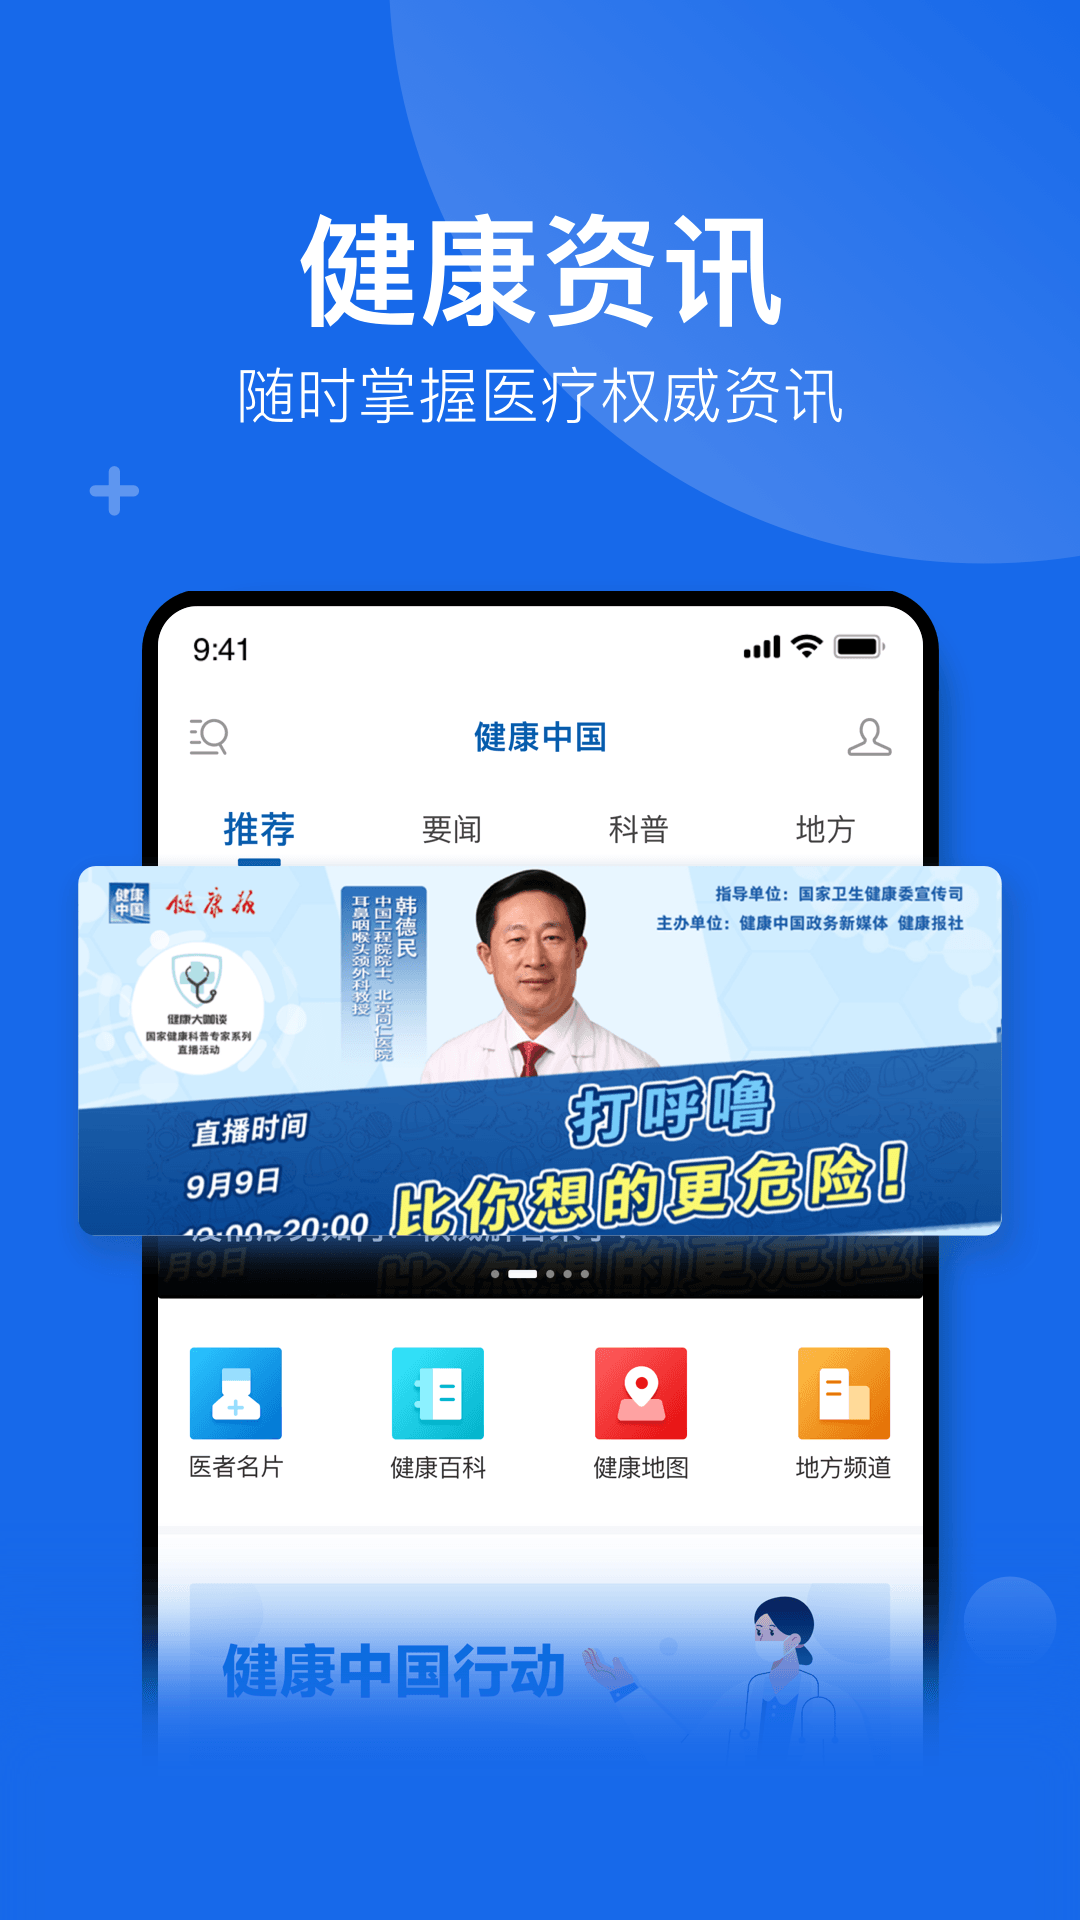 健康中国appv2.3.6